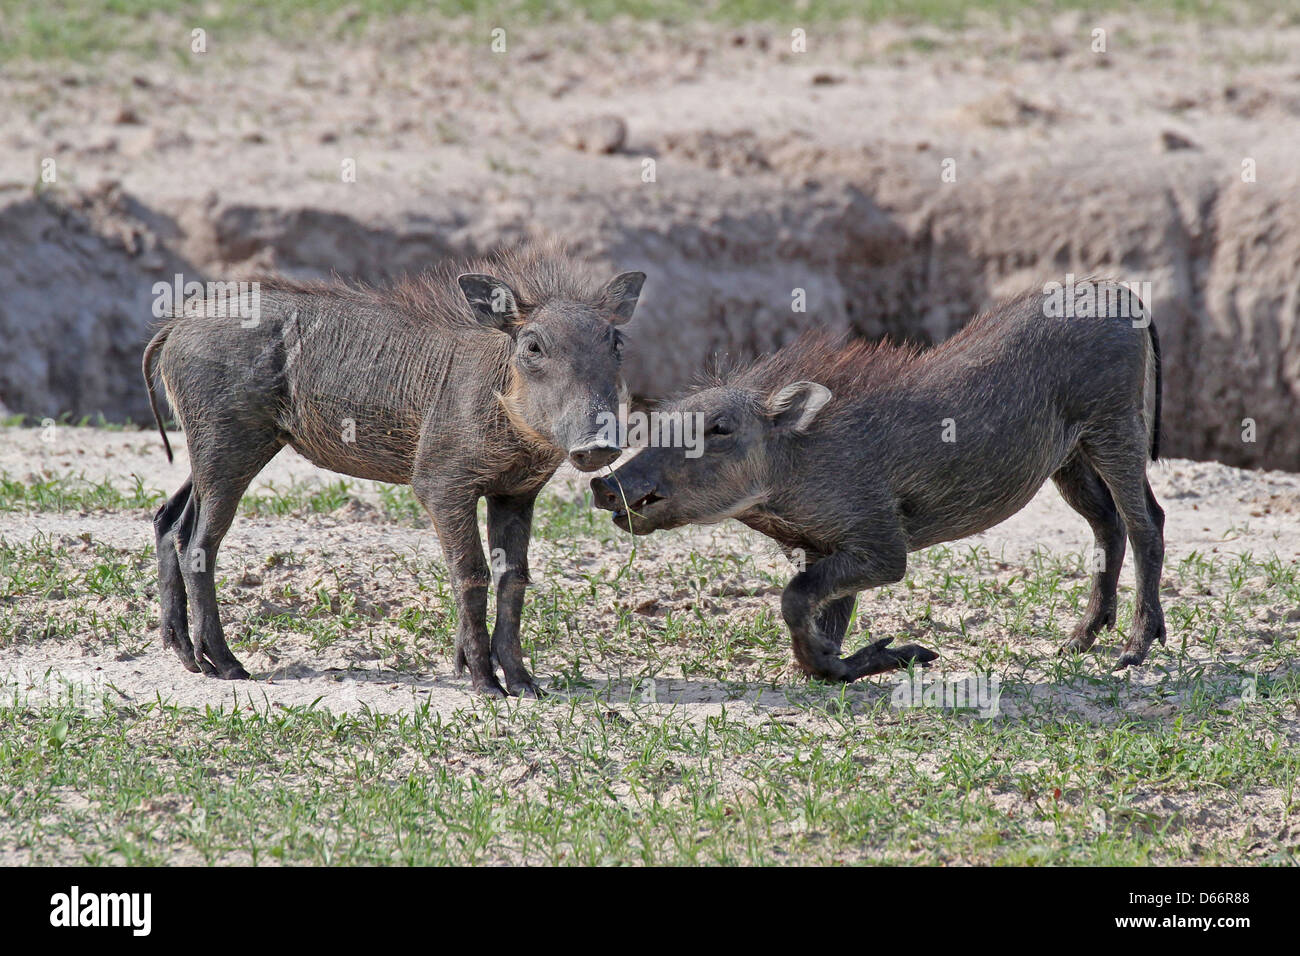 Two young warthogs playing, Chobe NP, Botswana Stock Photo